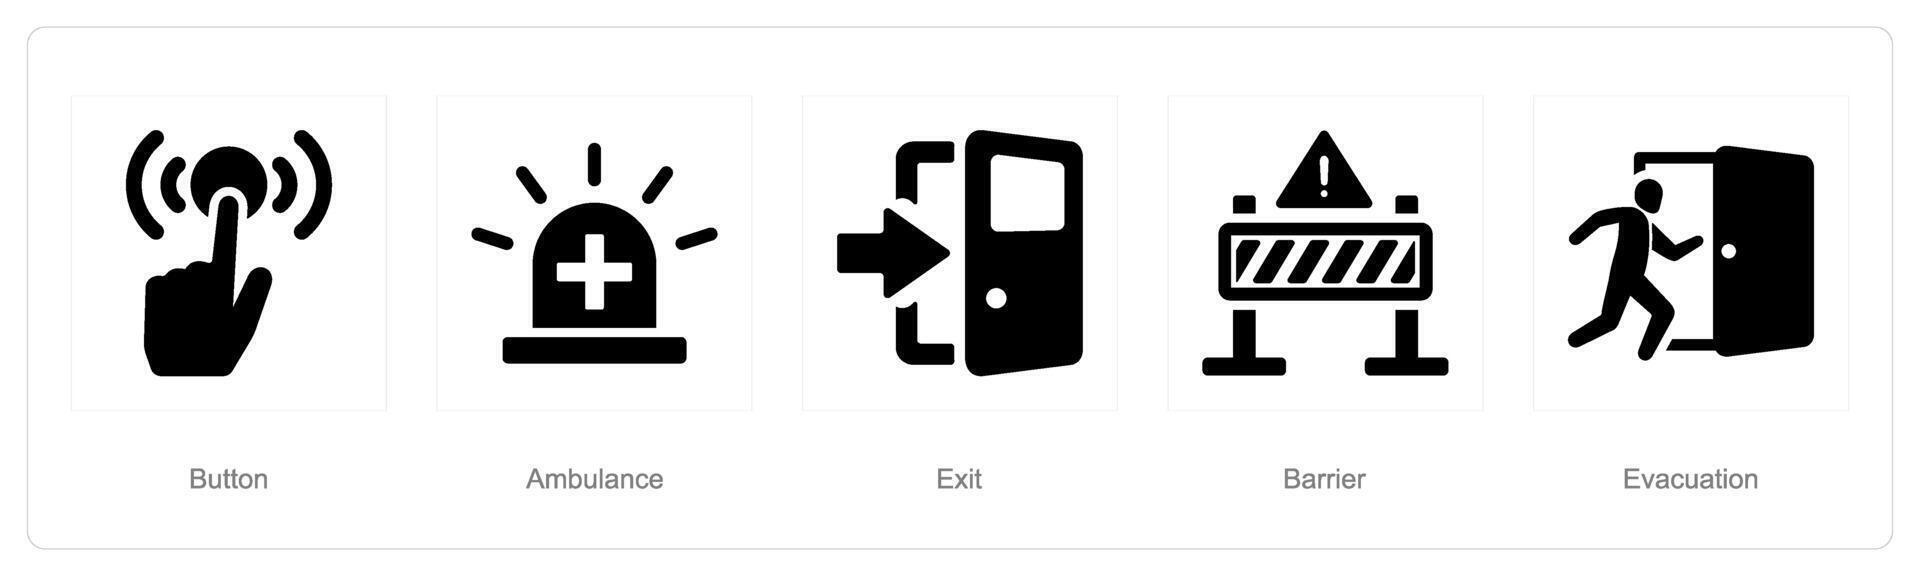 uma conjunto do 5 emergência ícones Como botão, ambulância, Saída vetor